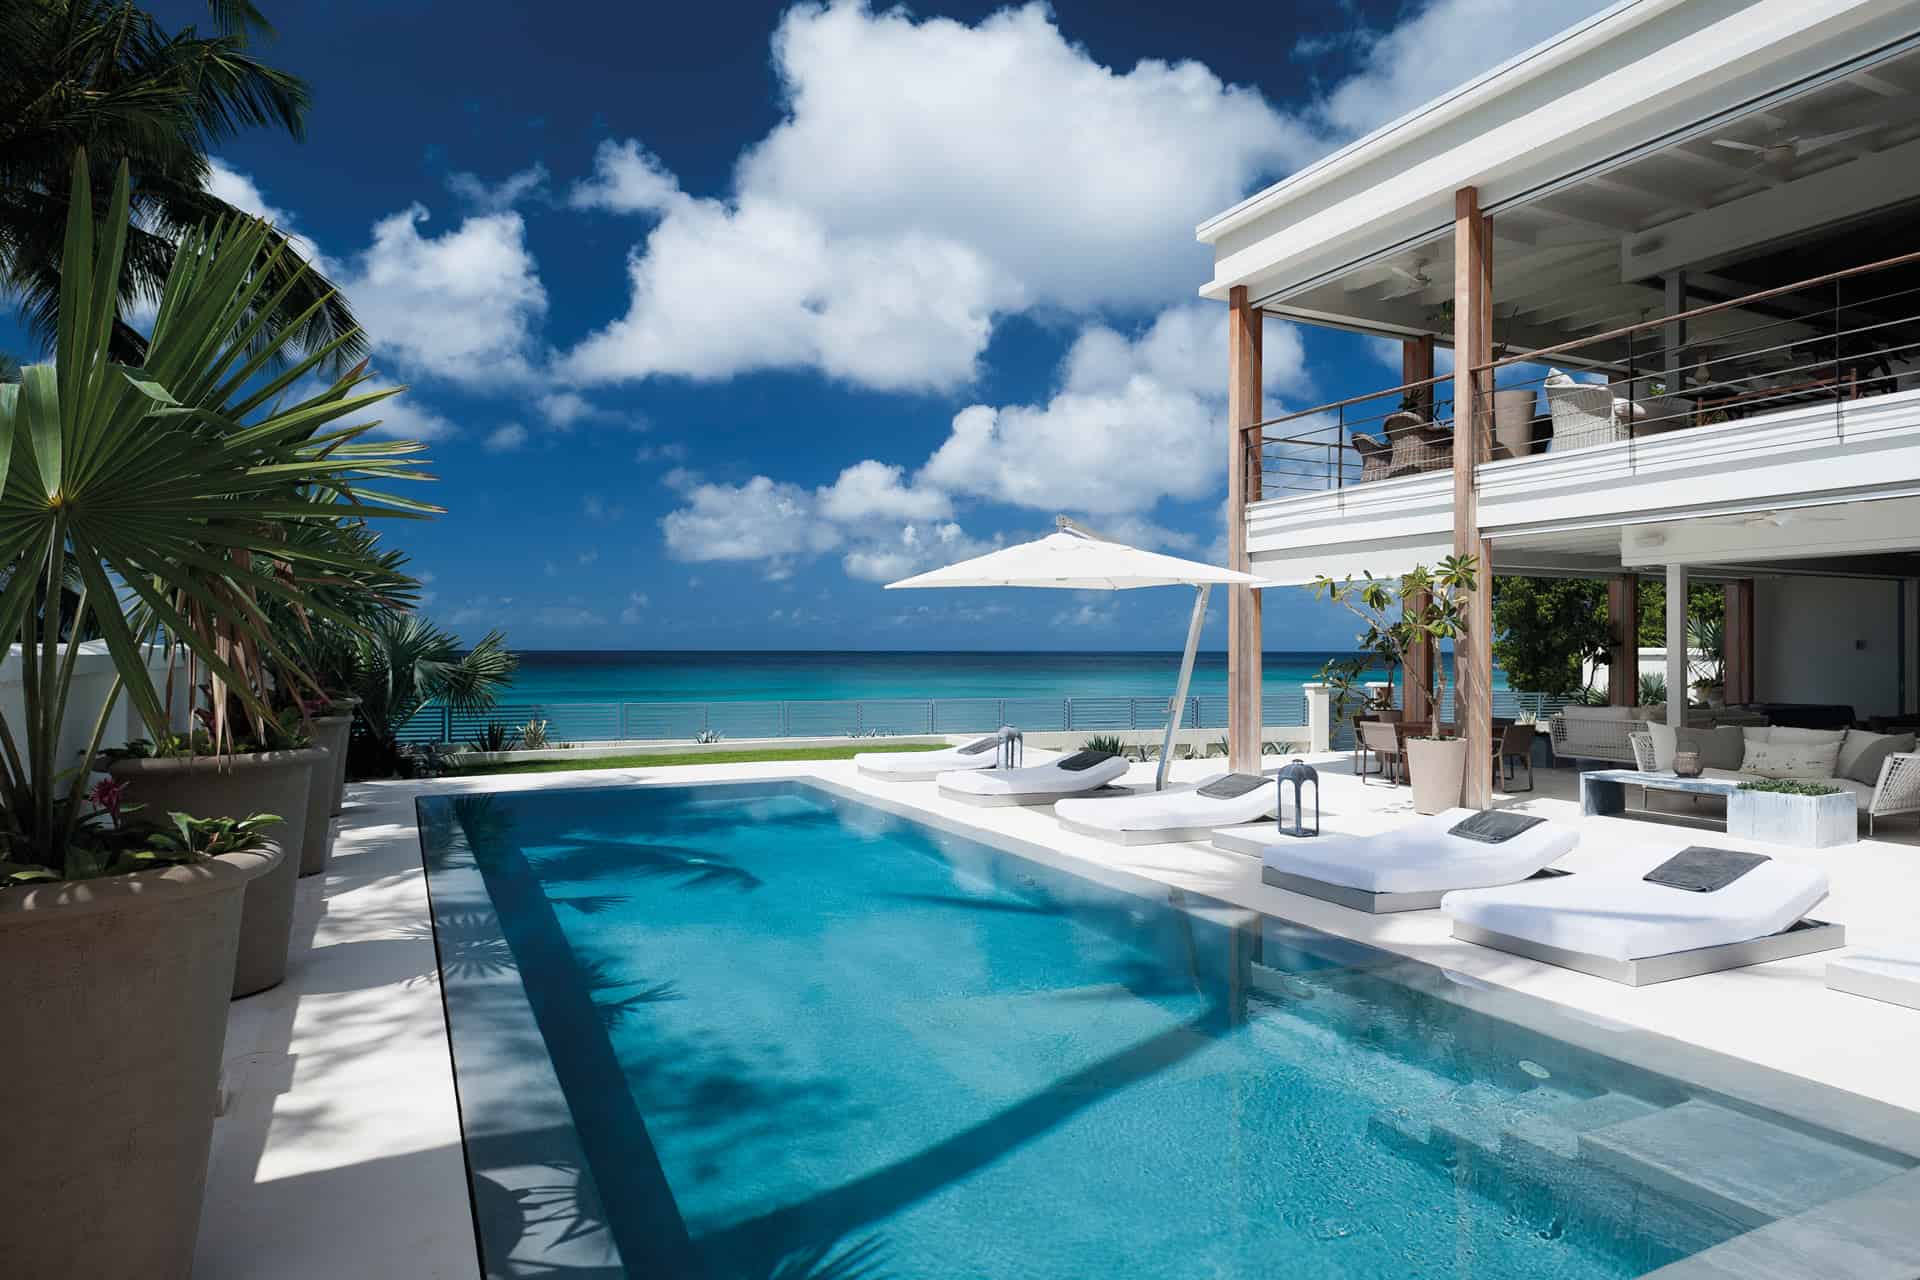 The Dream, Barbados